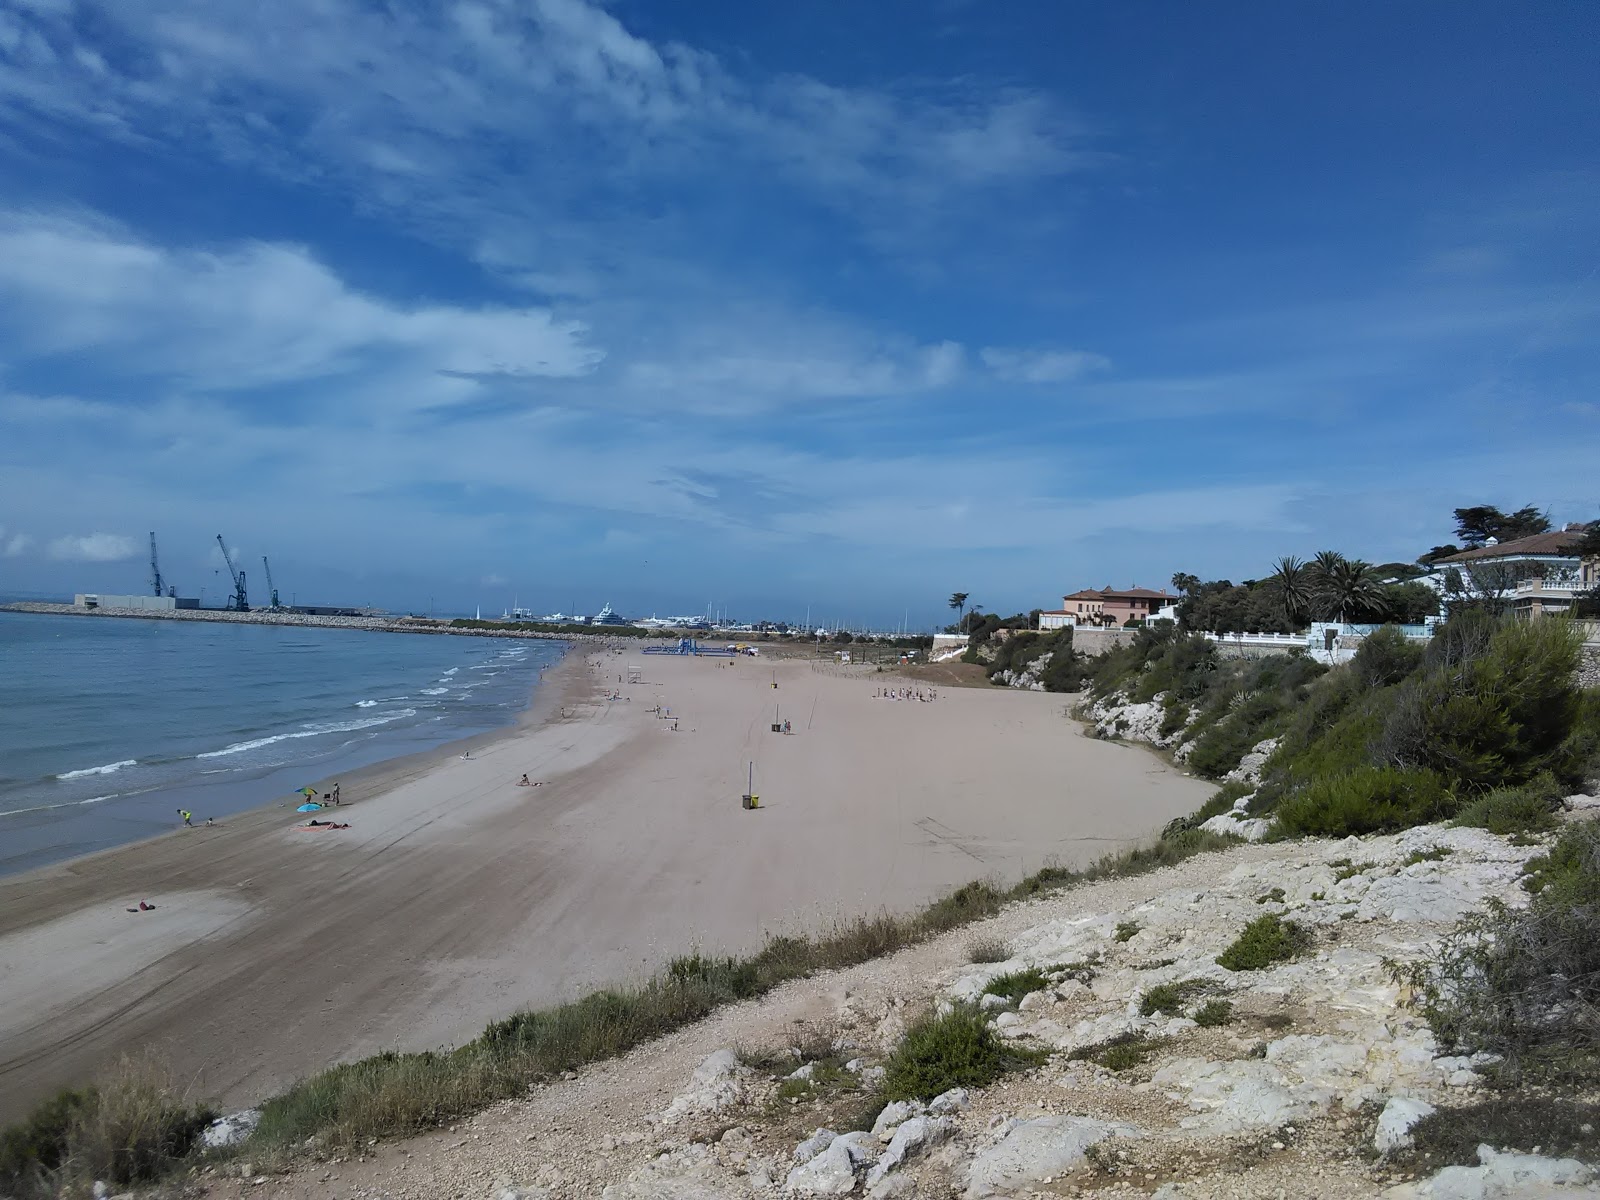 Fotografie cu Far de Sant Cristofol cu o suprafață de nisip maro